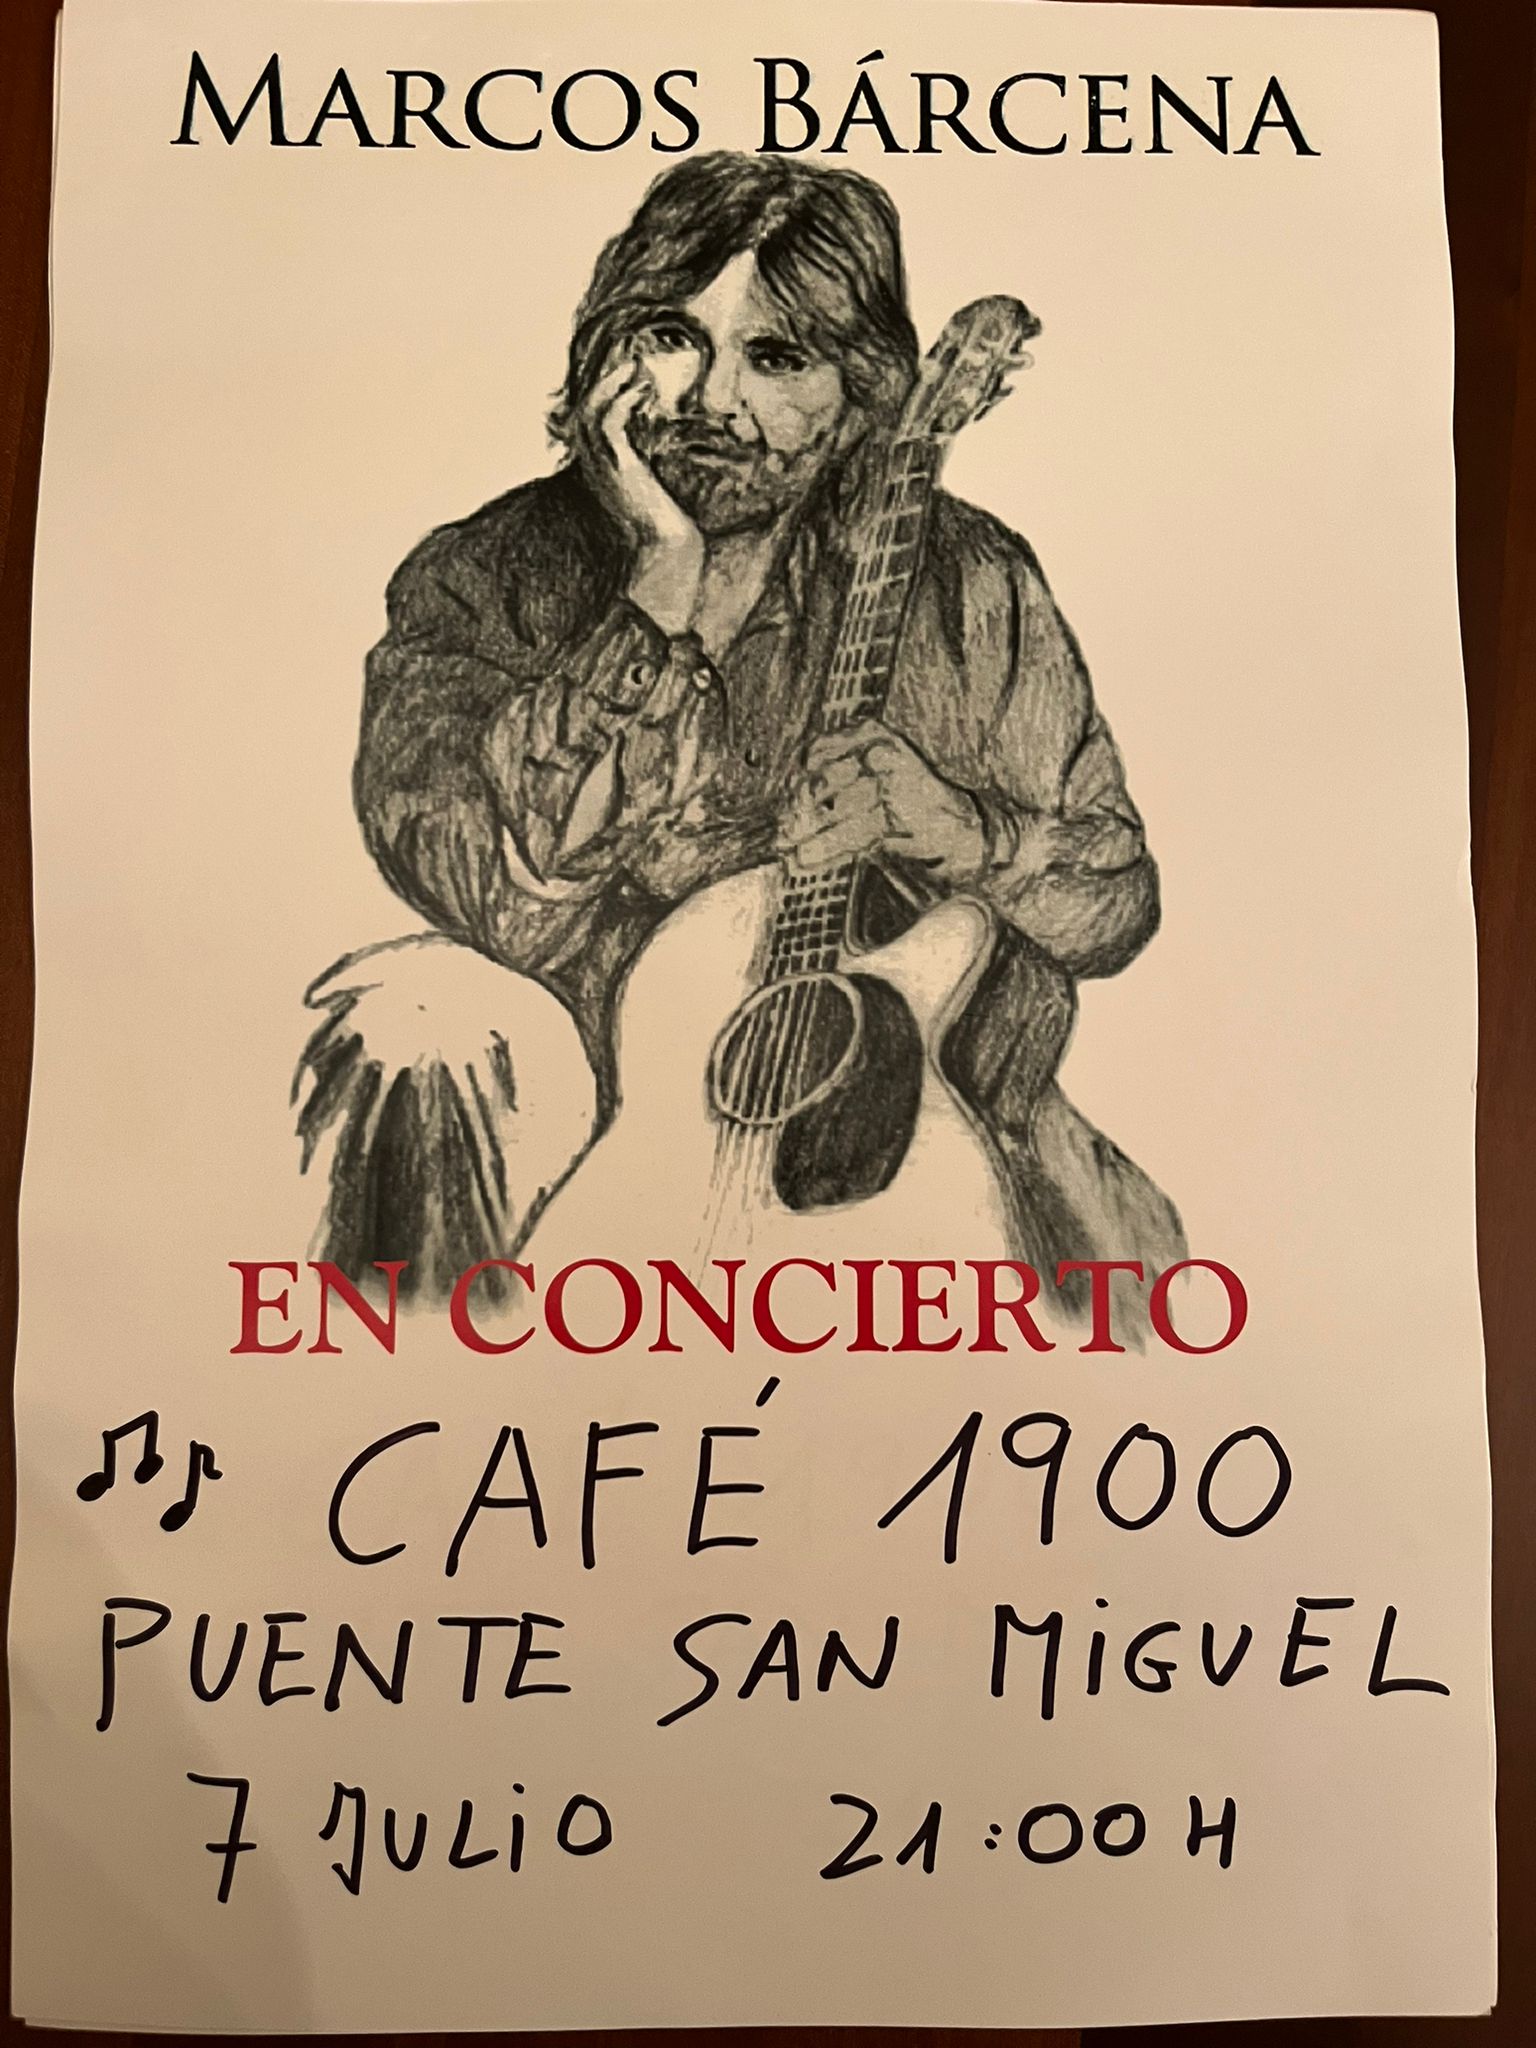 Concierto de Marcos Bárcena en Café 1900. Puente San Miguel